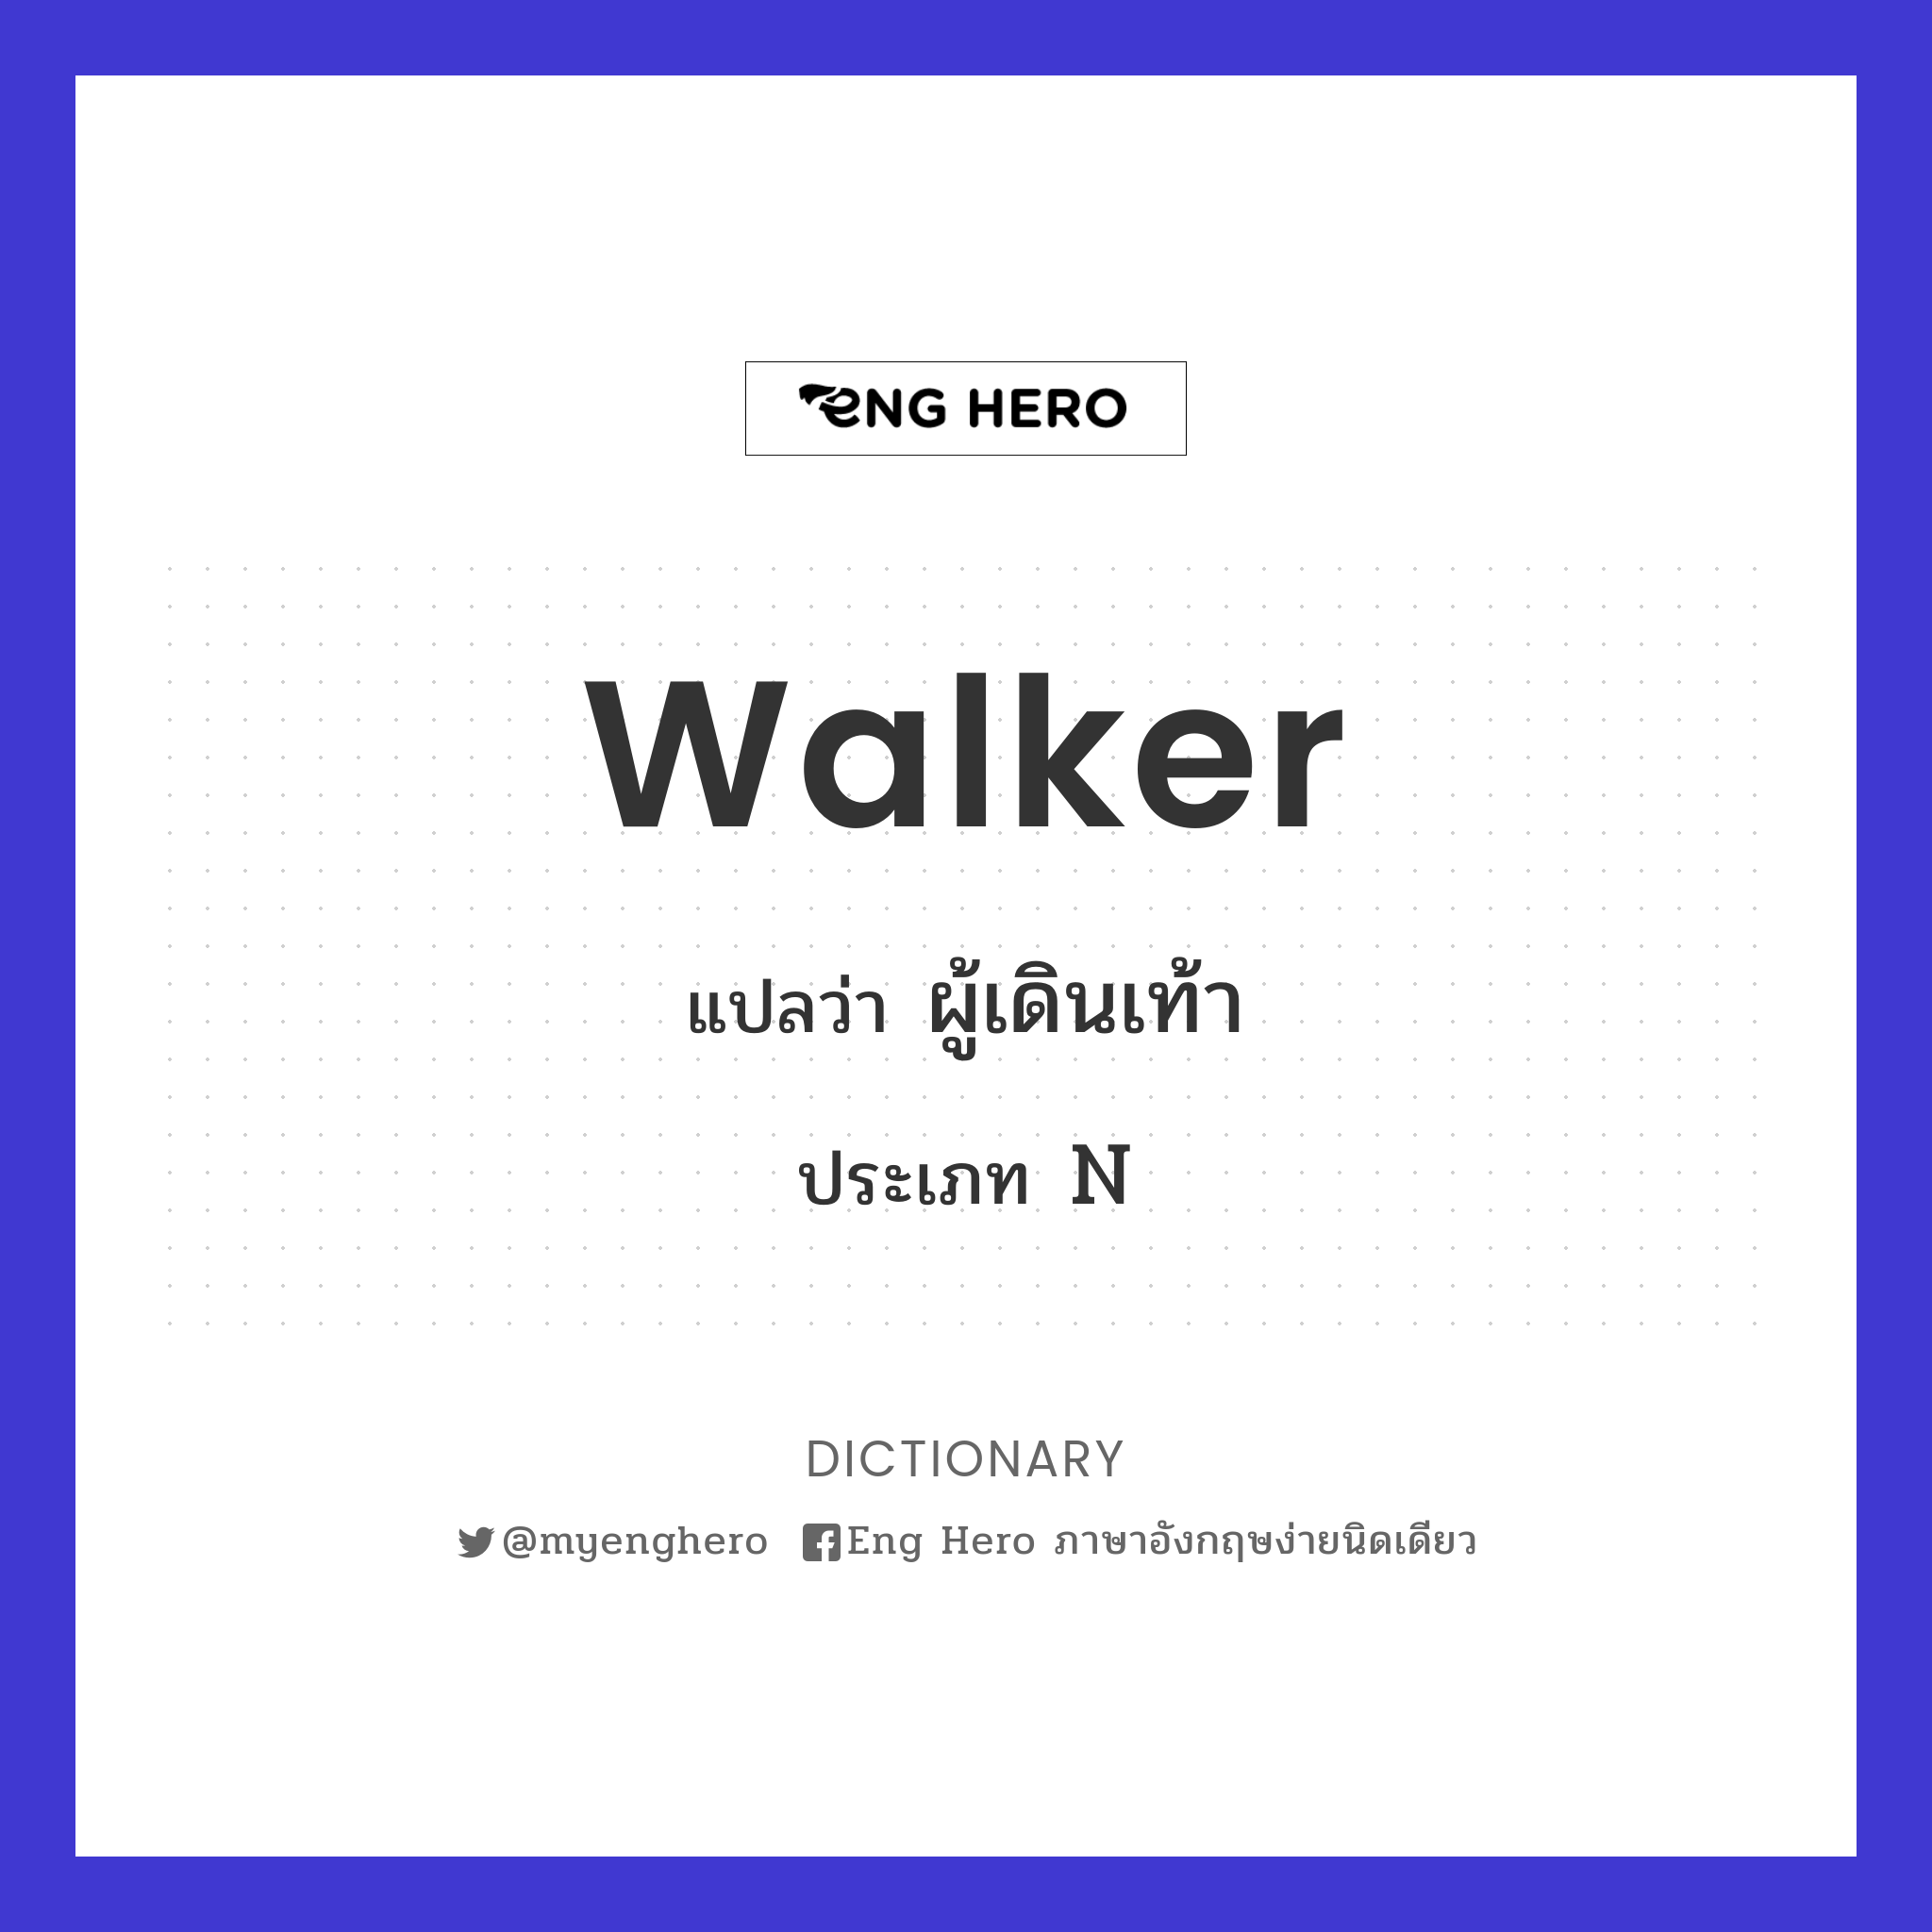 walker